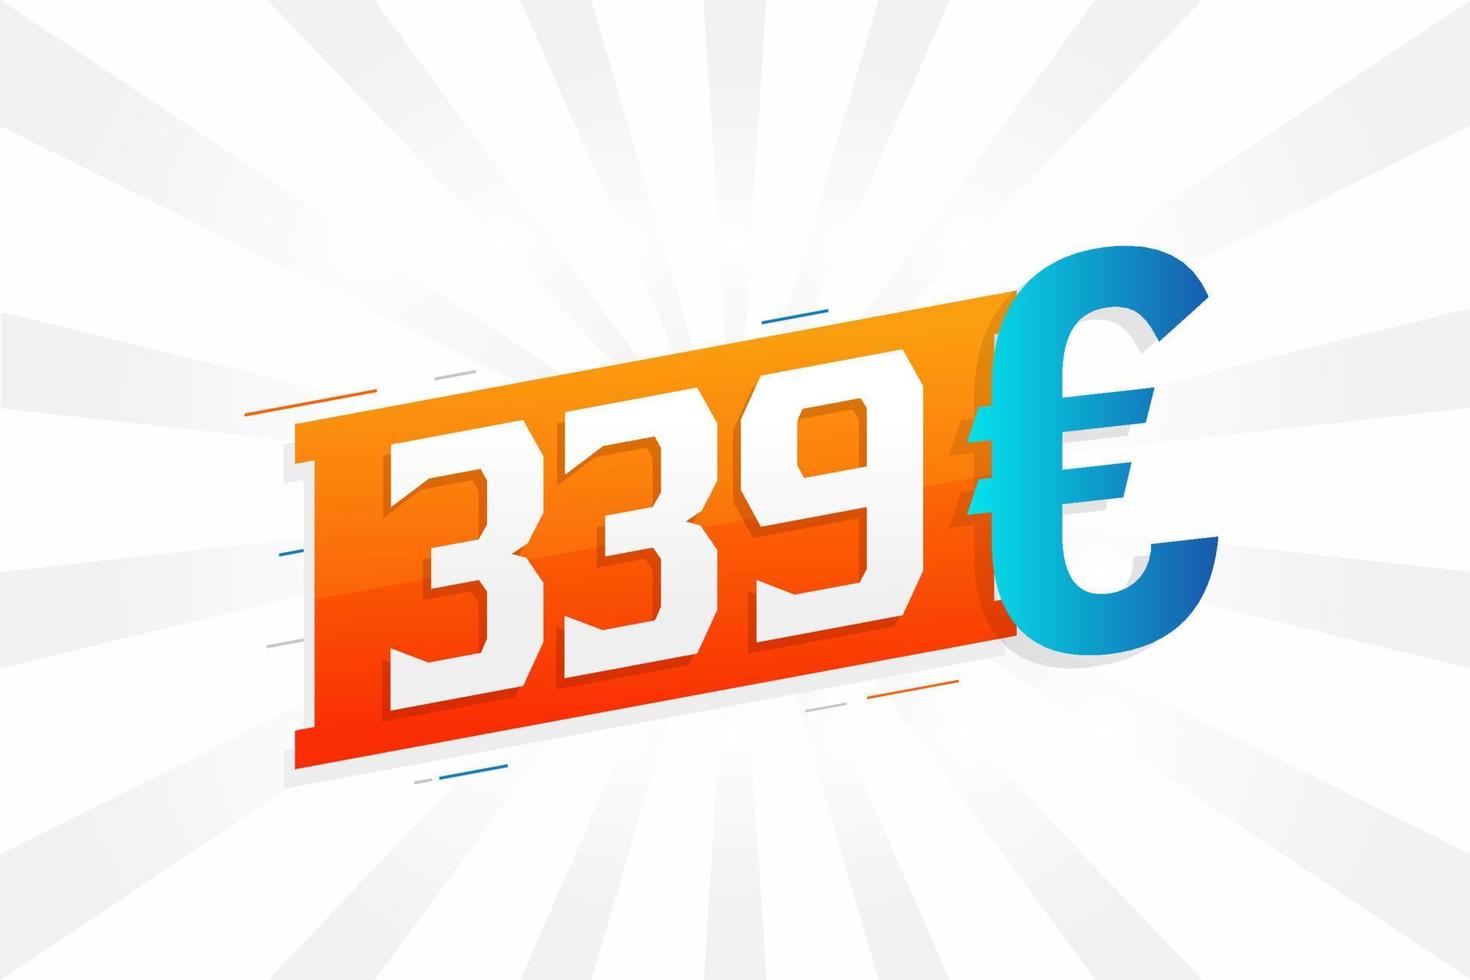 símbolo de texto de vetor de moeda de 339 euros. vetor de estoque de dinheiro da união europeia de 339 euros